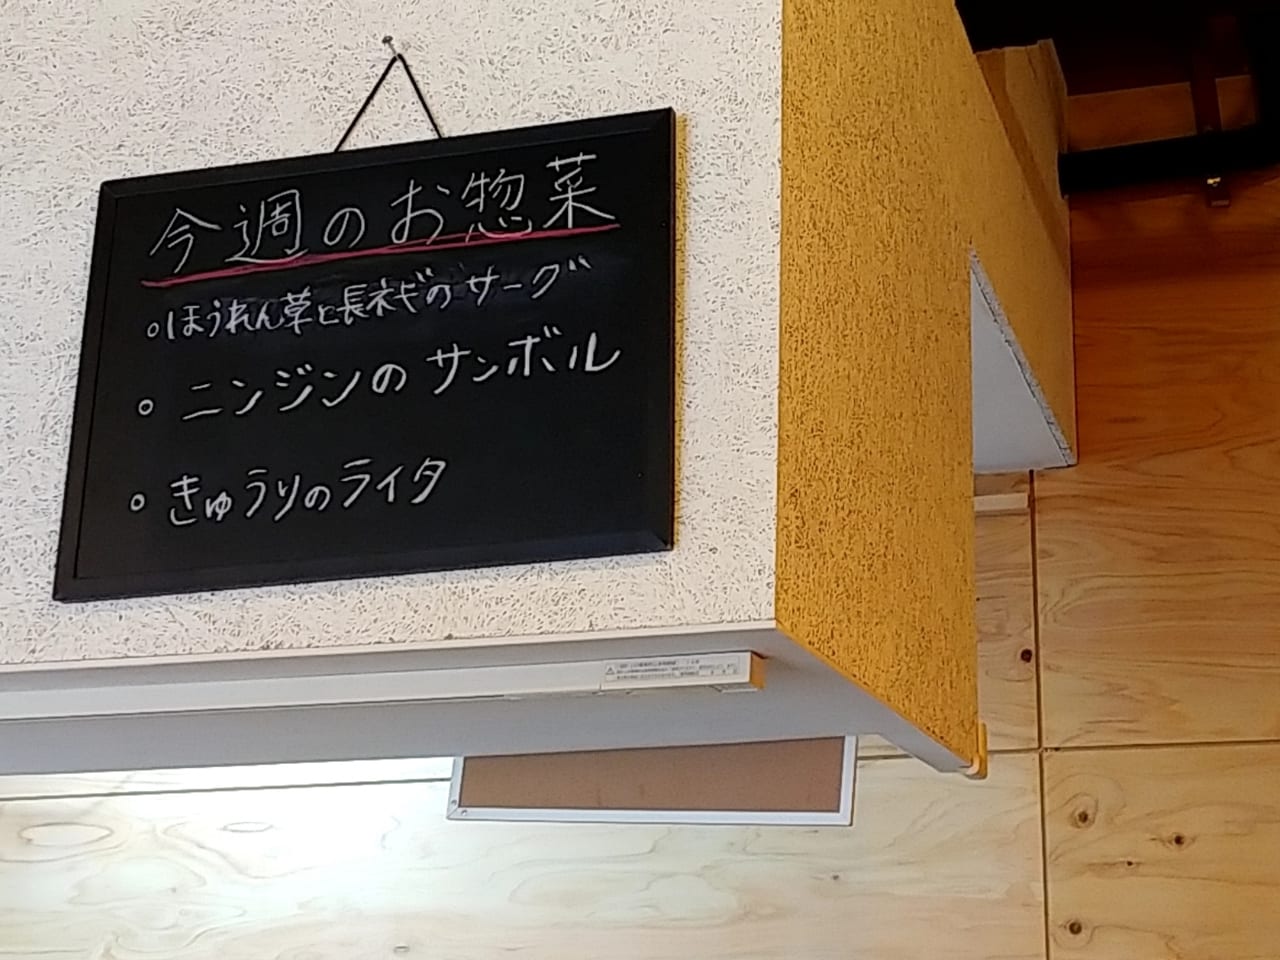 「チャトラ」のお惣菜メニュー